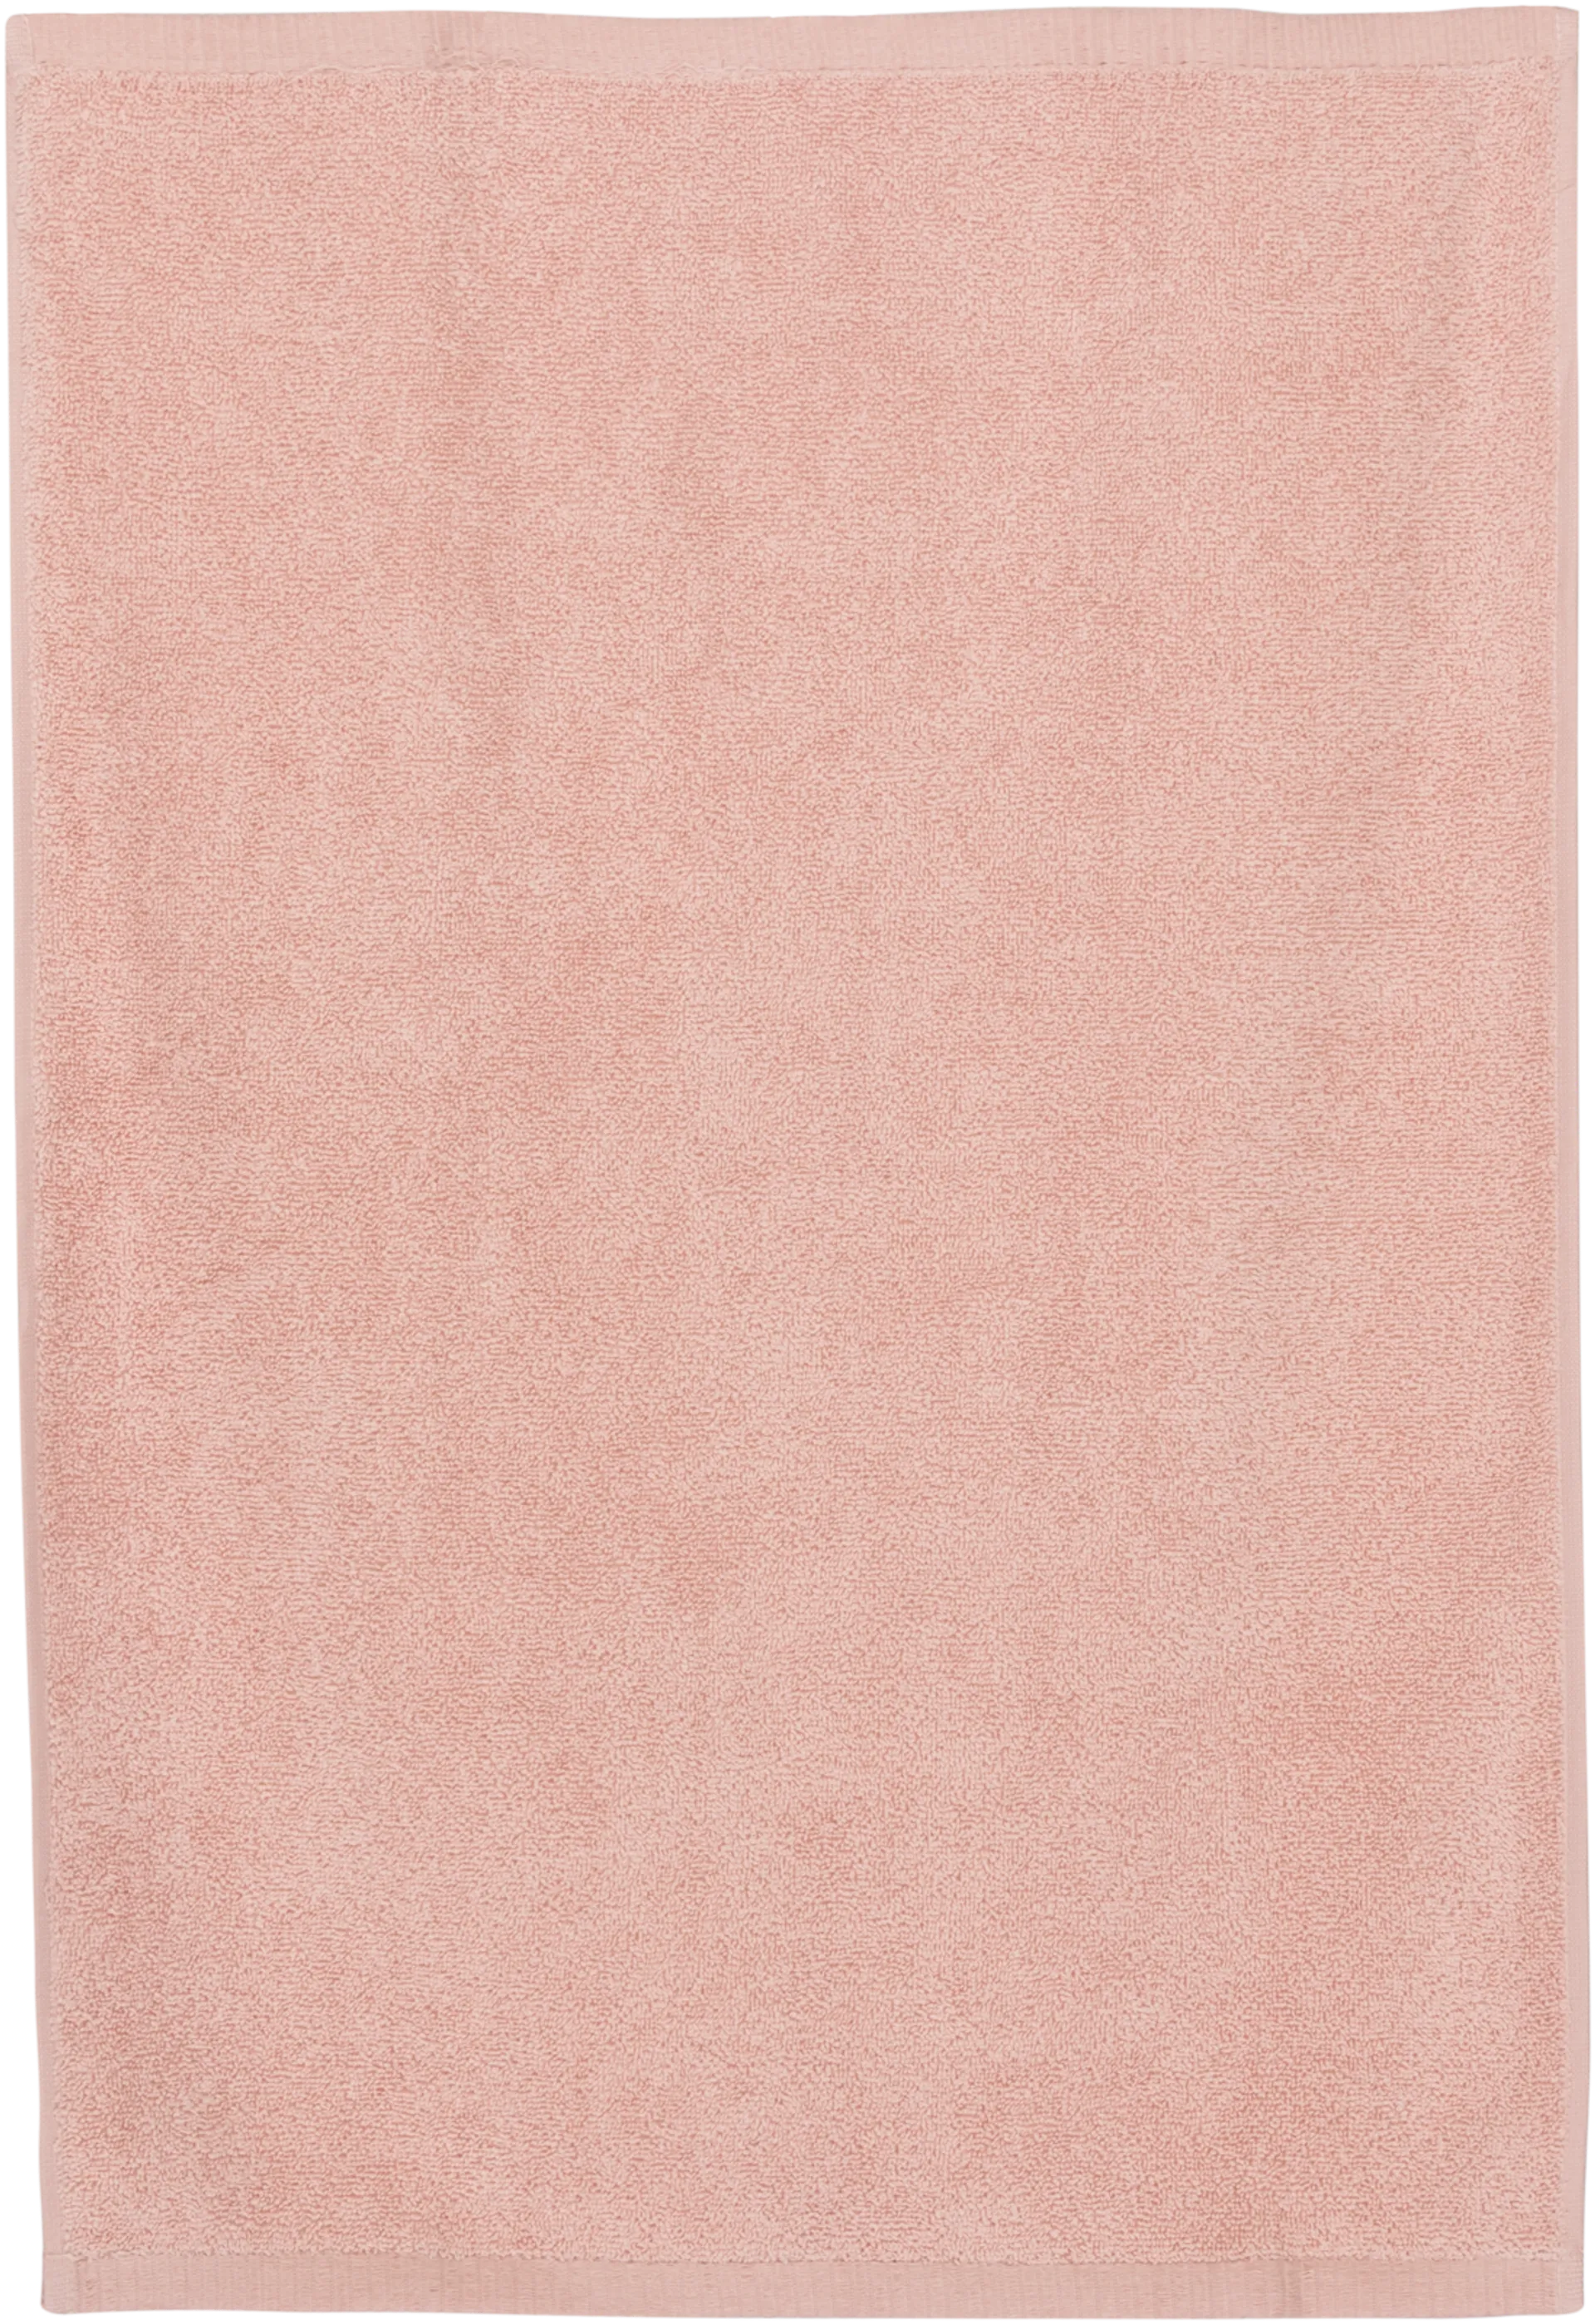 House käsipyyhe Minea 50 x 70 cm roosa